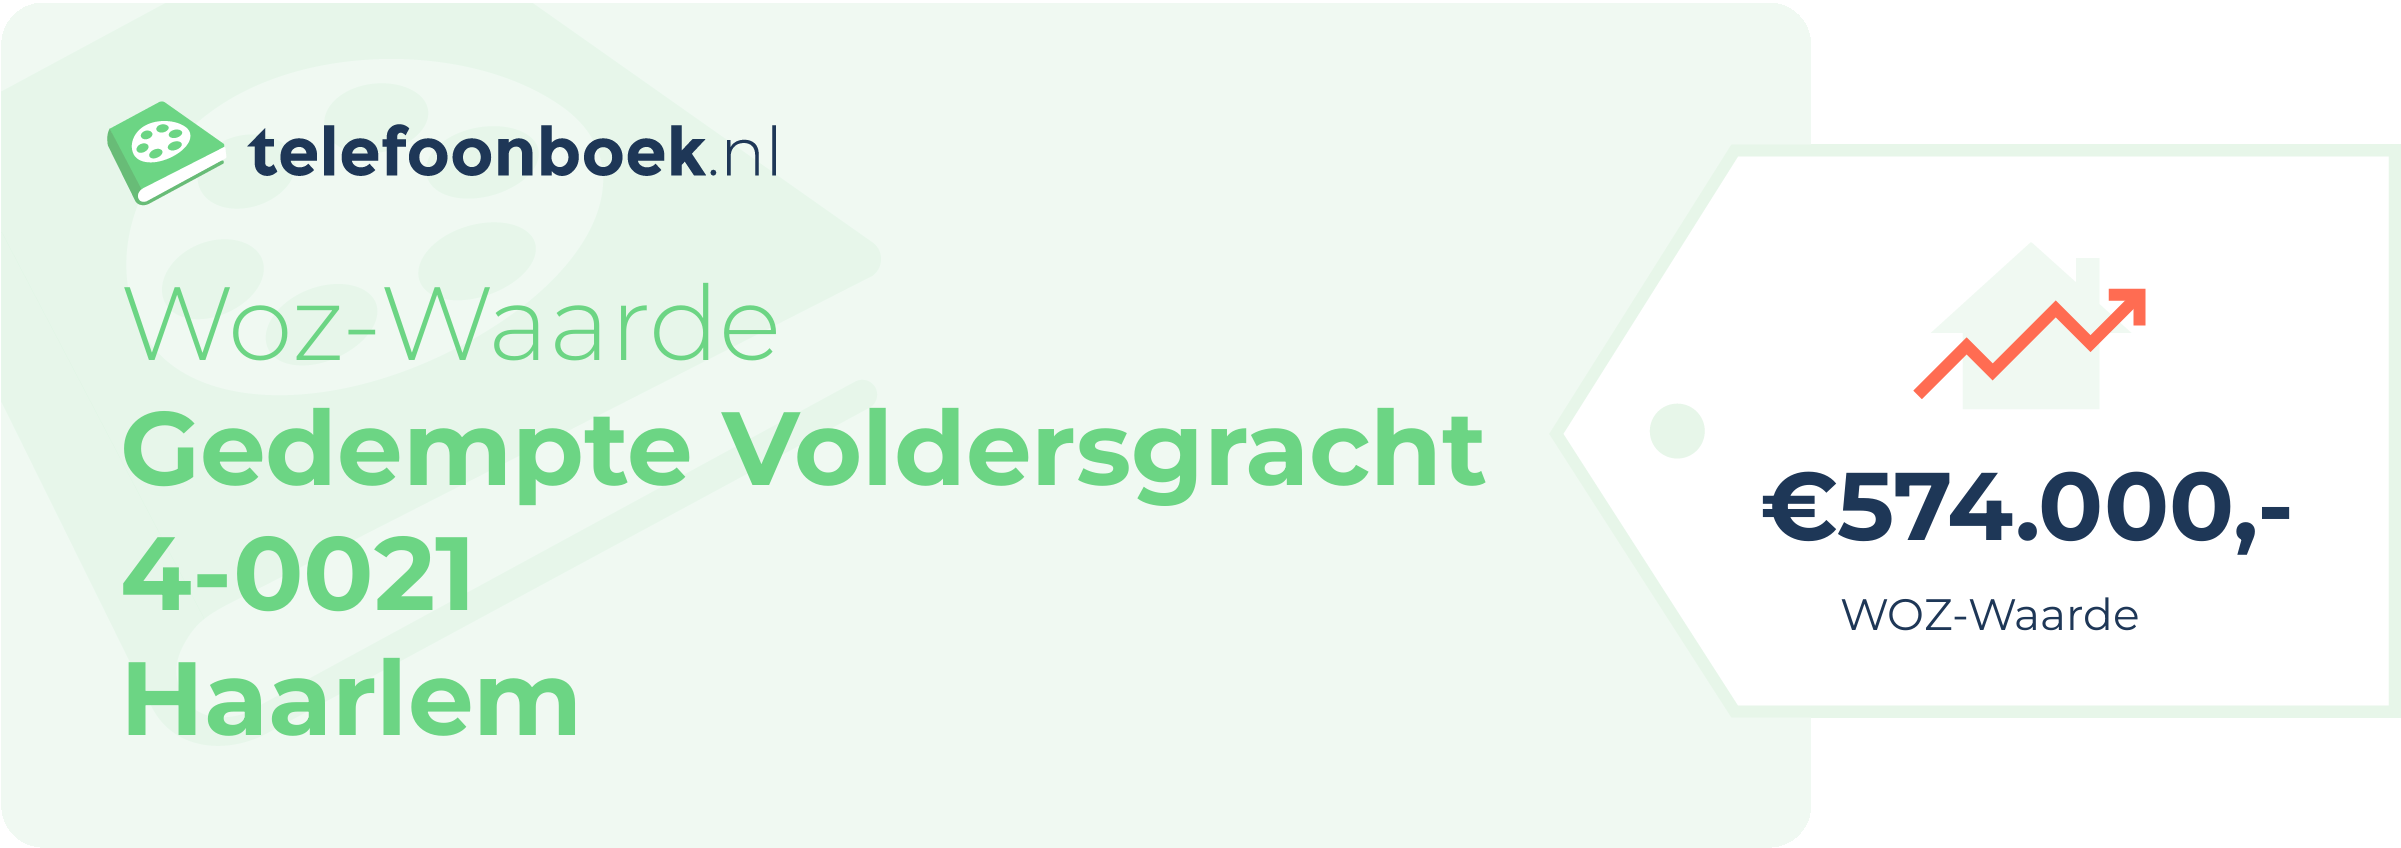 WOZ-waarde Gedempte Voldersgracht 4-0021 Haarlem